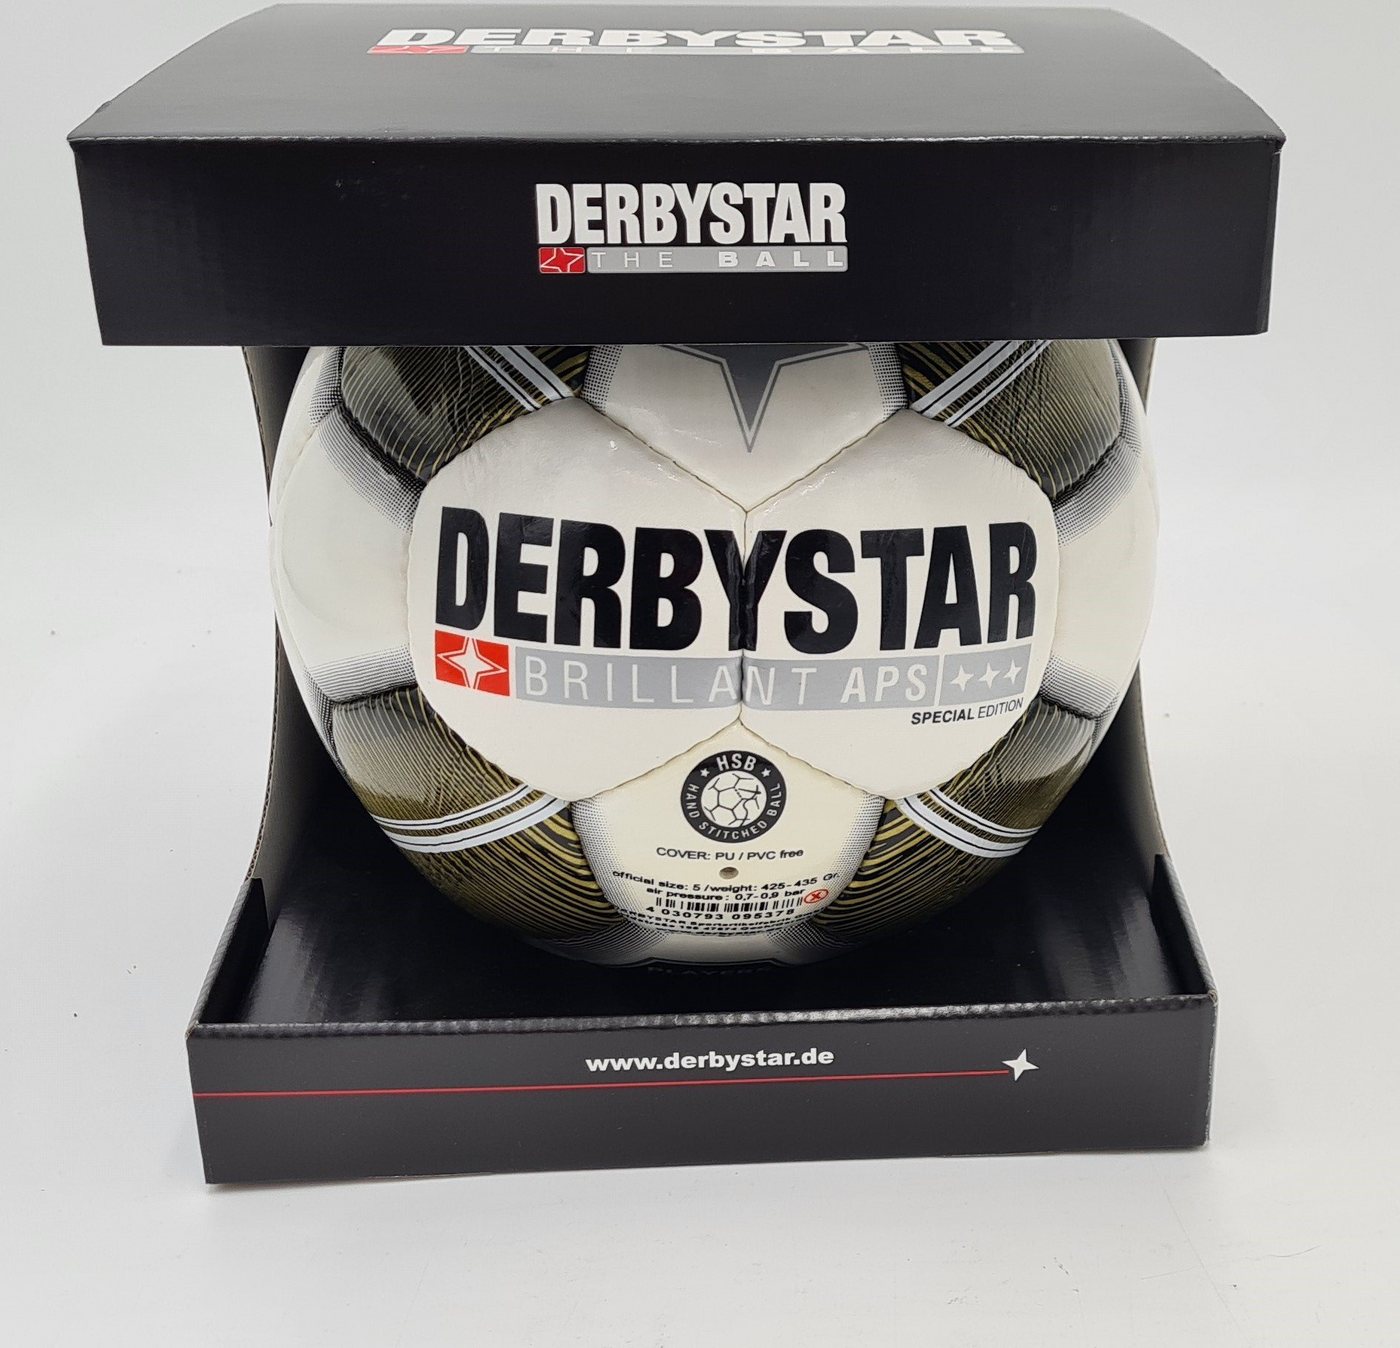 Derbystar Fußball Brillant APS SPECIAL GOLD EDITION in Geschenkbox von Derbystar